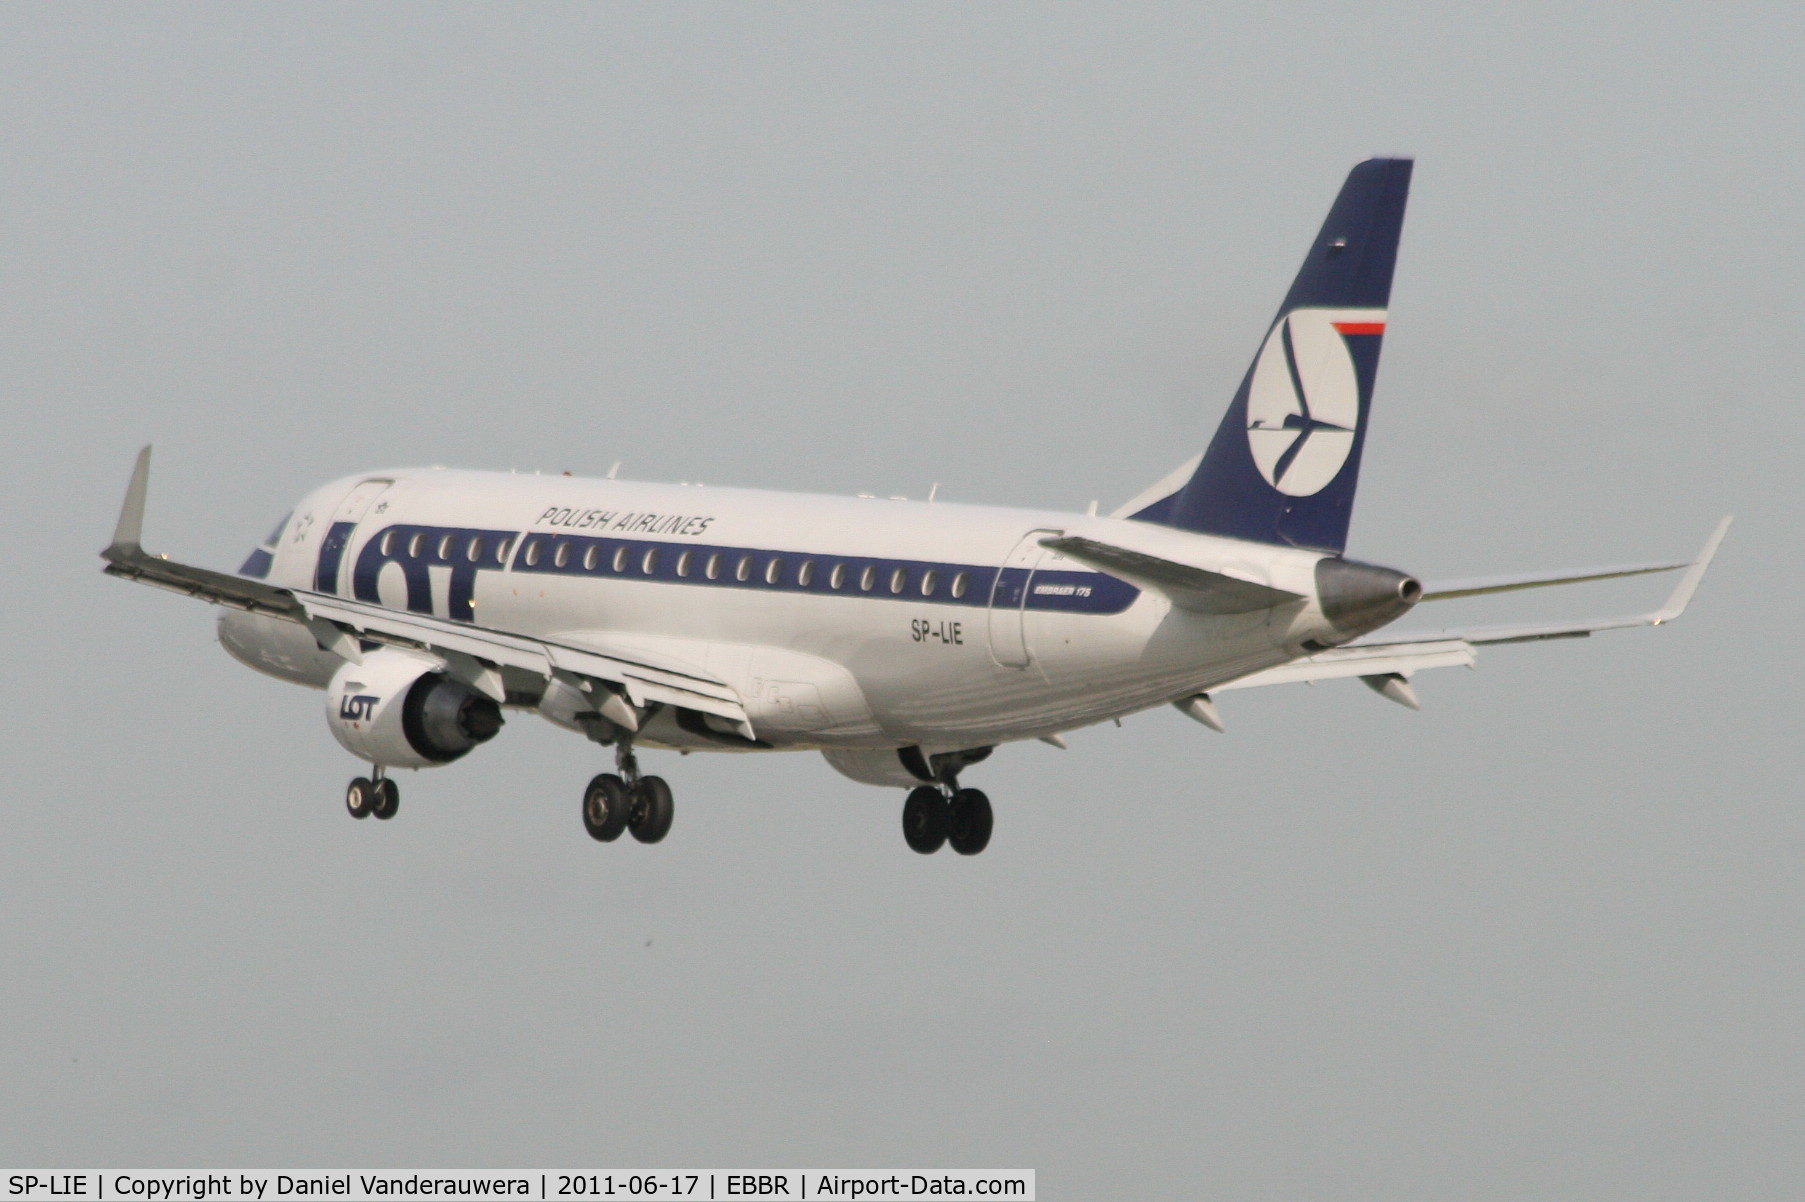 SP-LIE, 2006 Embraer 175LR (ERJ-170-200LR) C/N 17000153, Flight LO235 is descending to RWY 25L